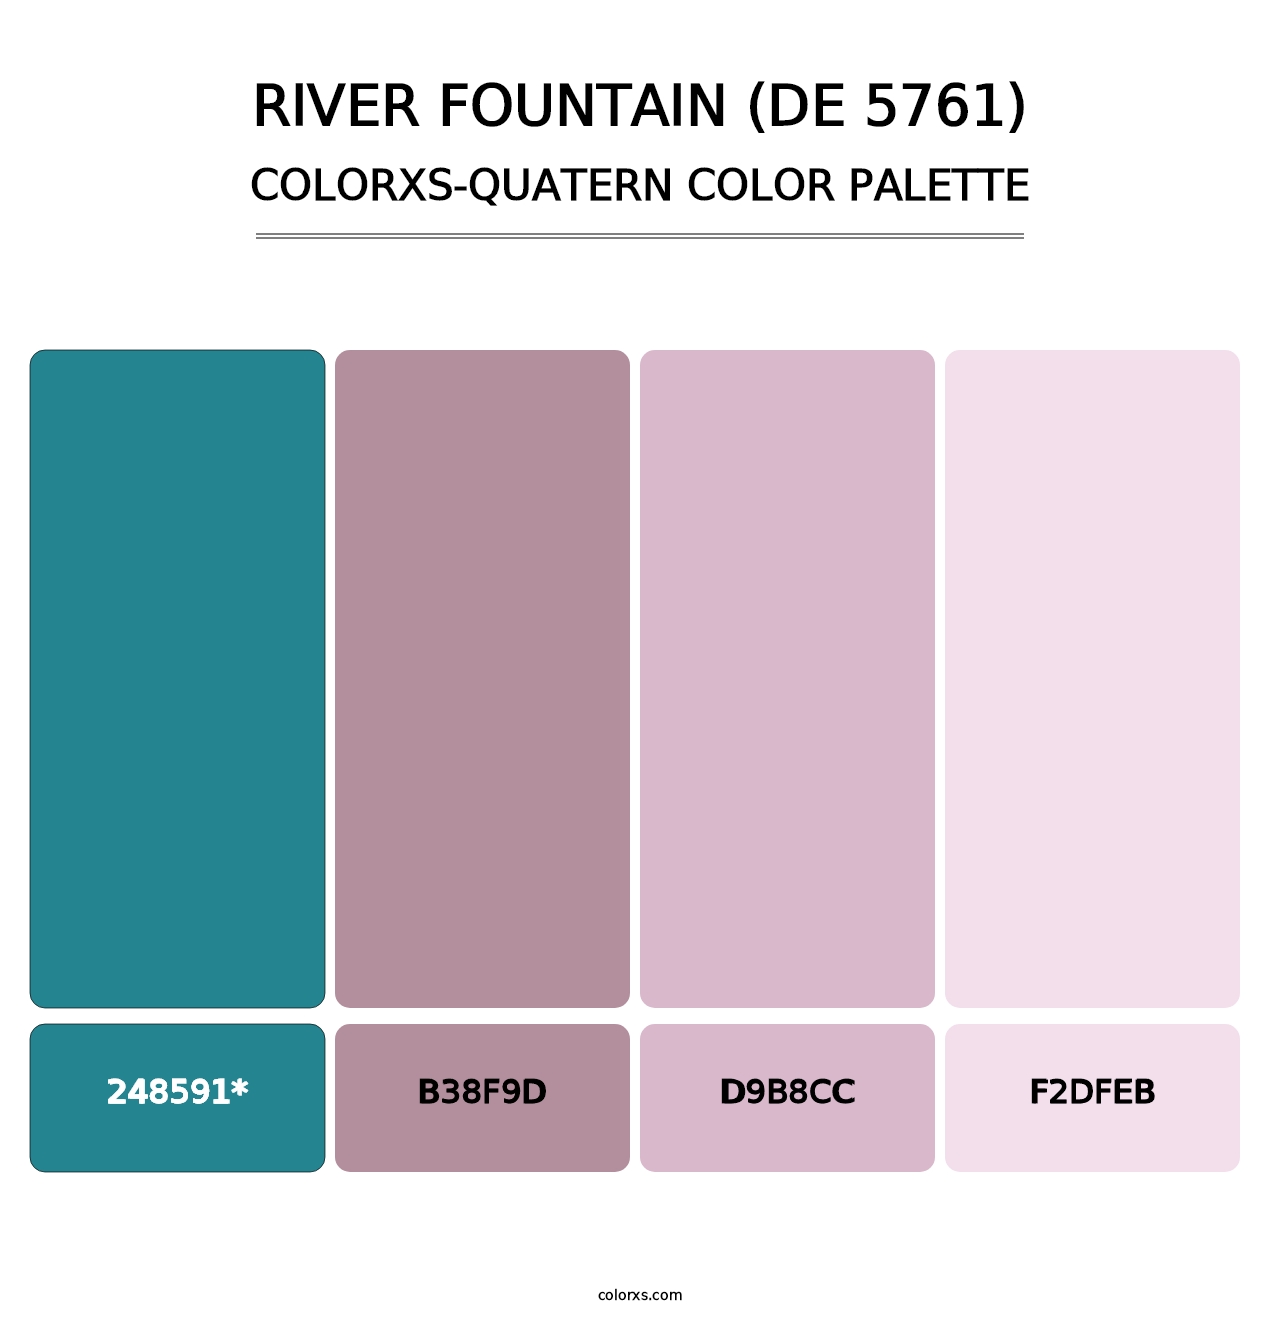 River Fountain (DE 5761) - Colorxs Quatern Palette